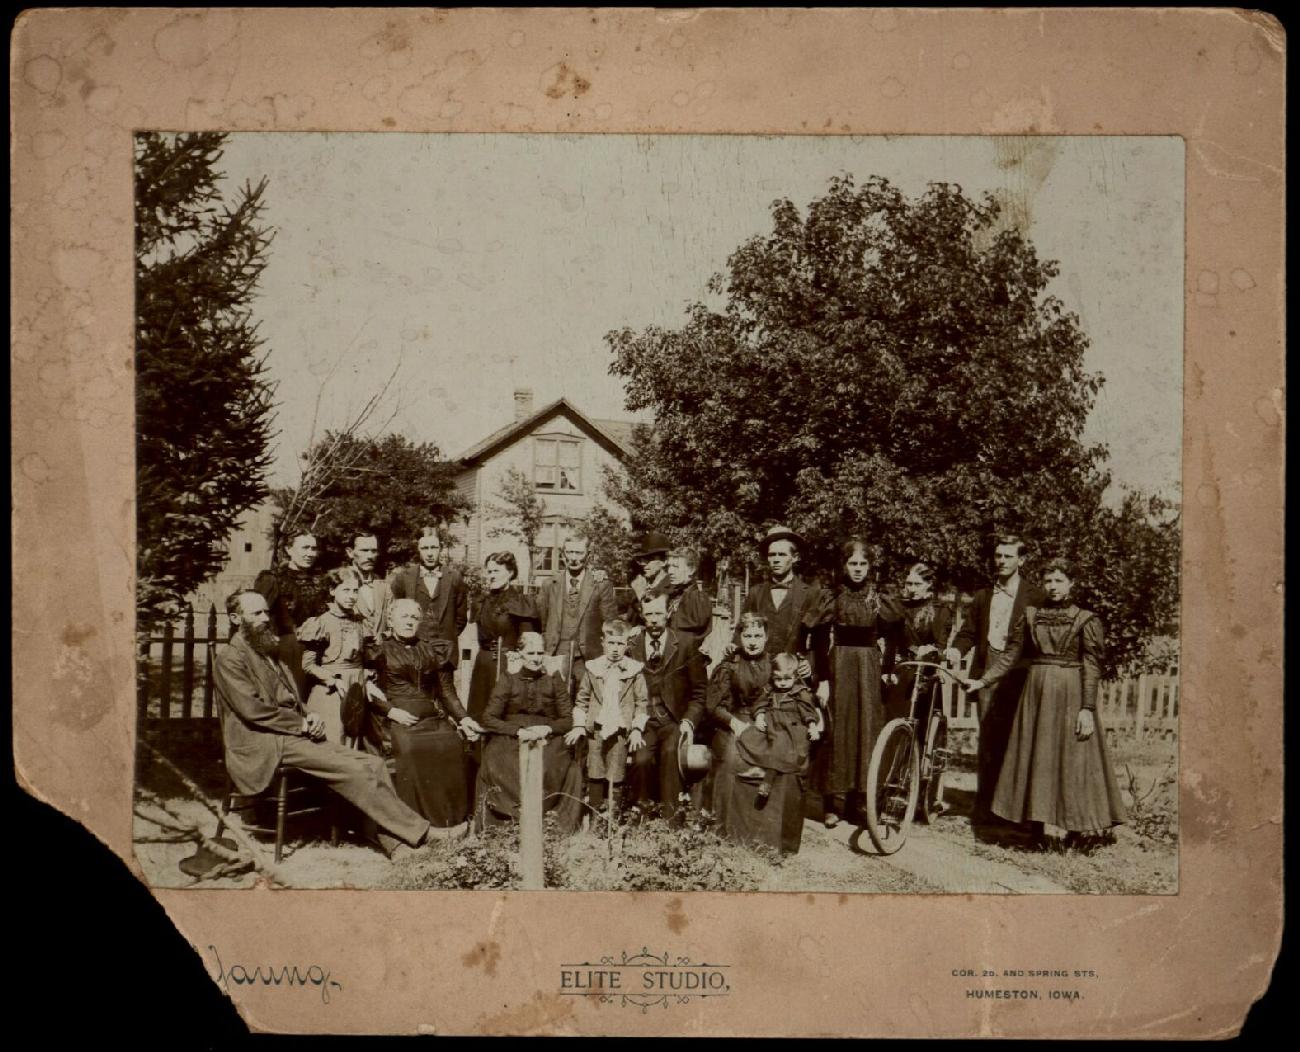 American school children 1880s